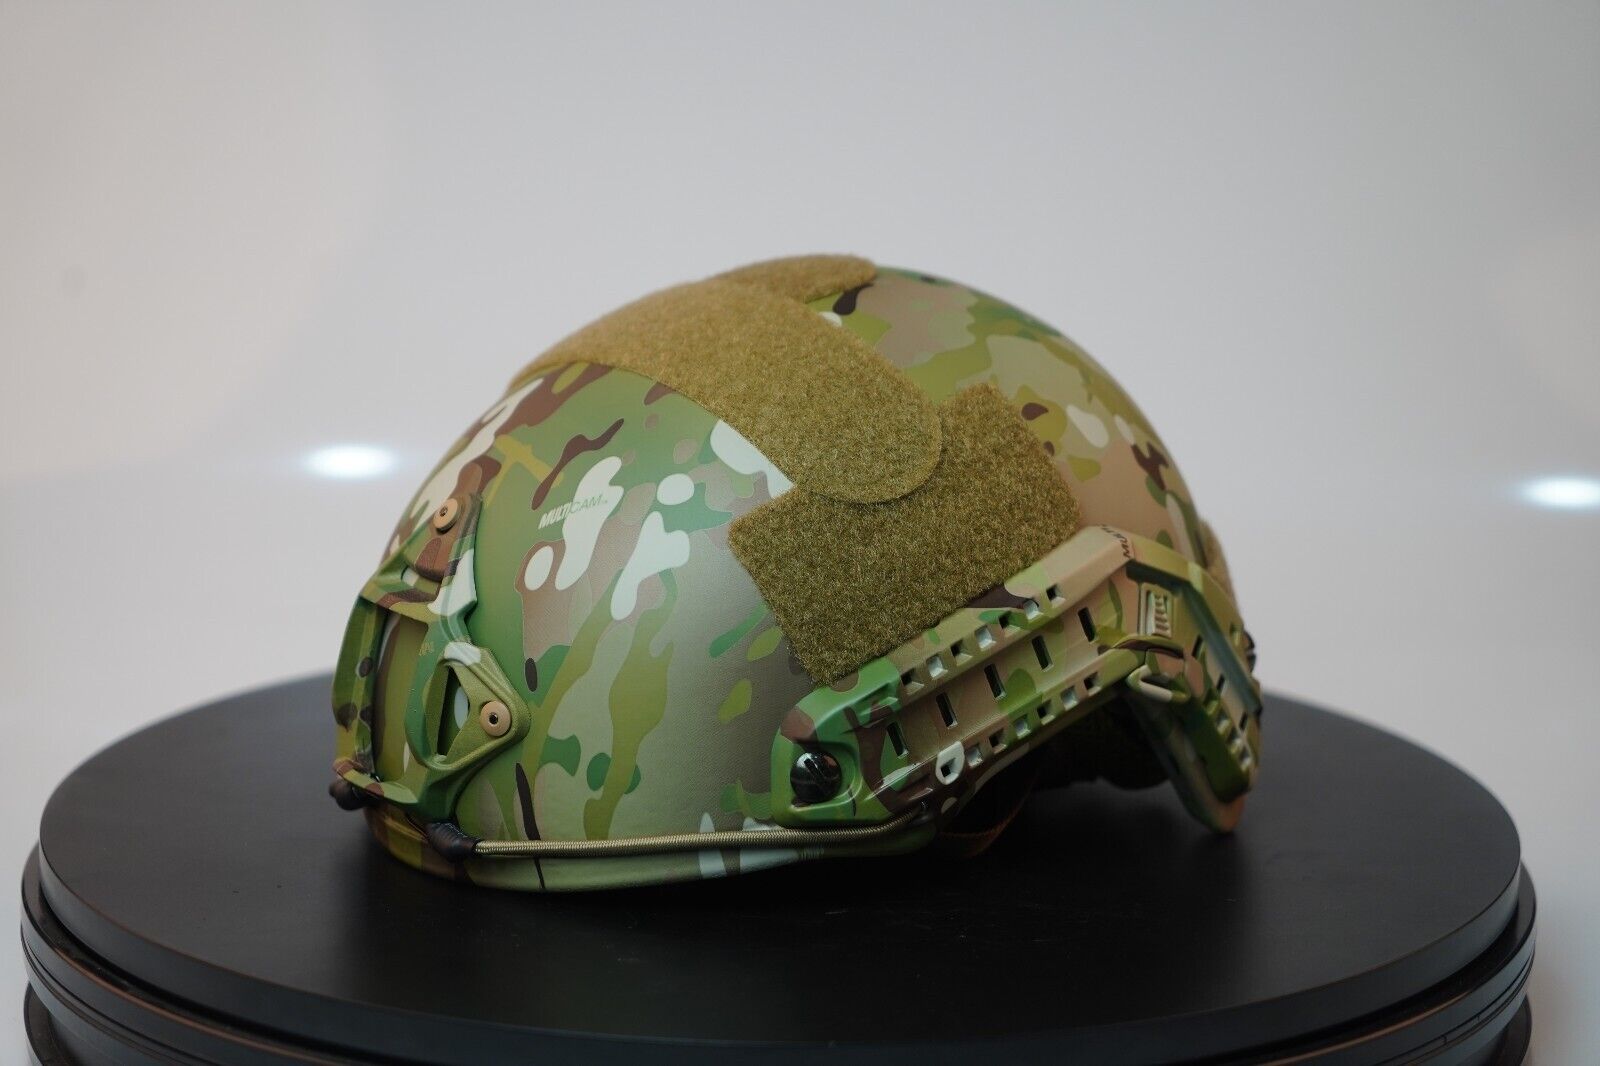 Multicam NIJ IIIA FAST Military Combat Ballistic Helmet Size M/L